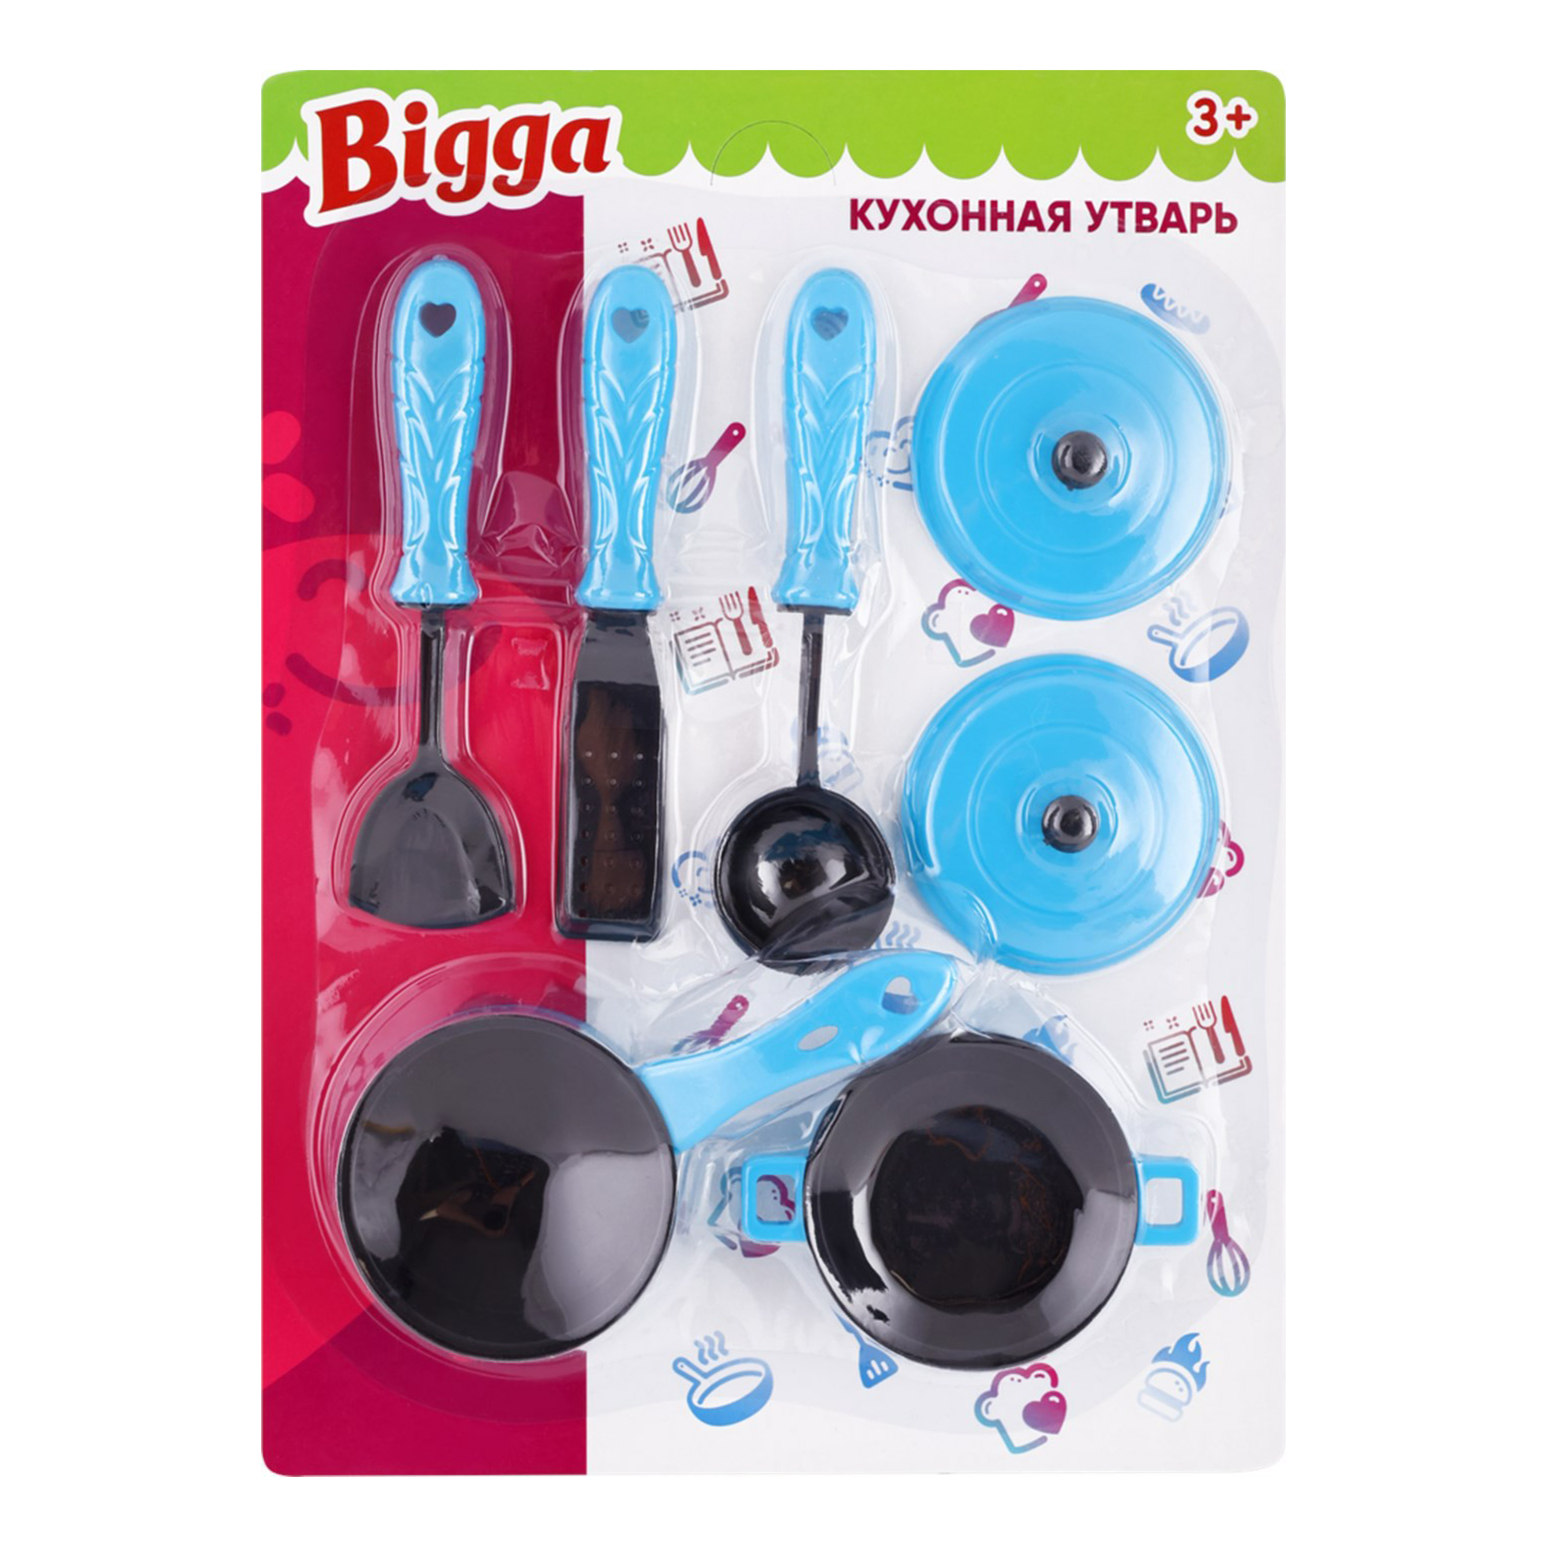 Набор игрушечной посуды Bigga Кухонная утварь 7 предметов в ассортименте